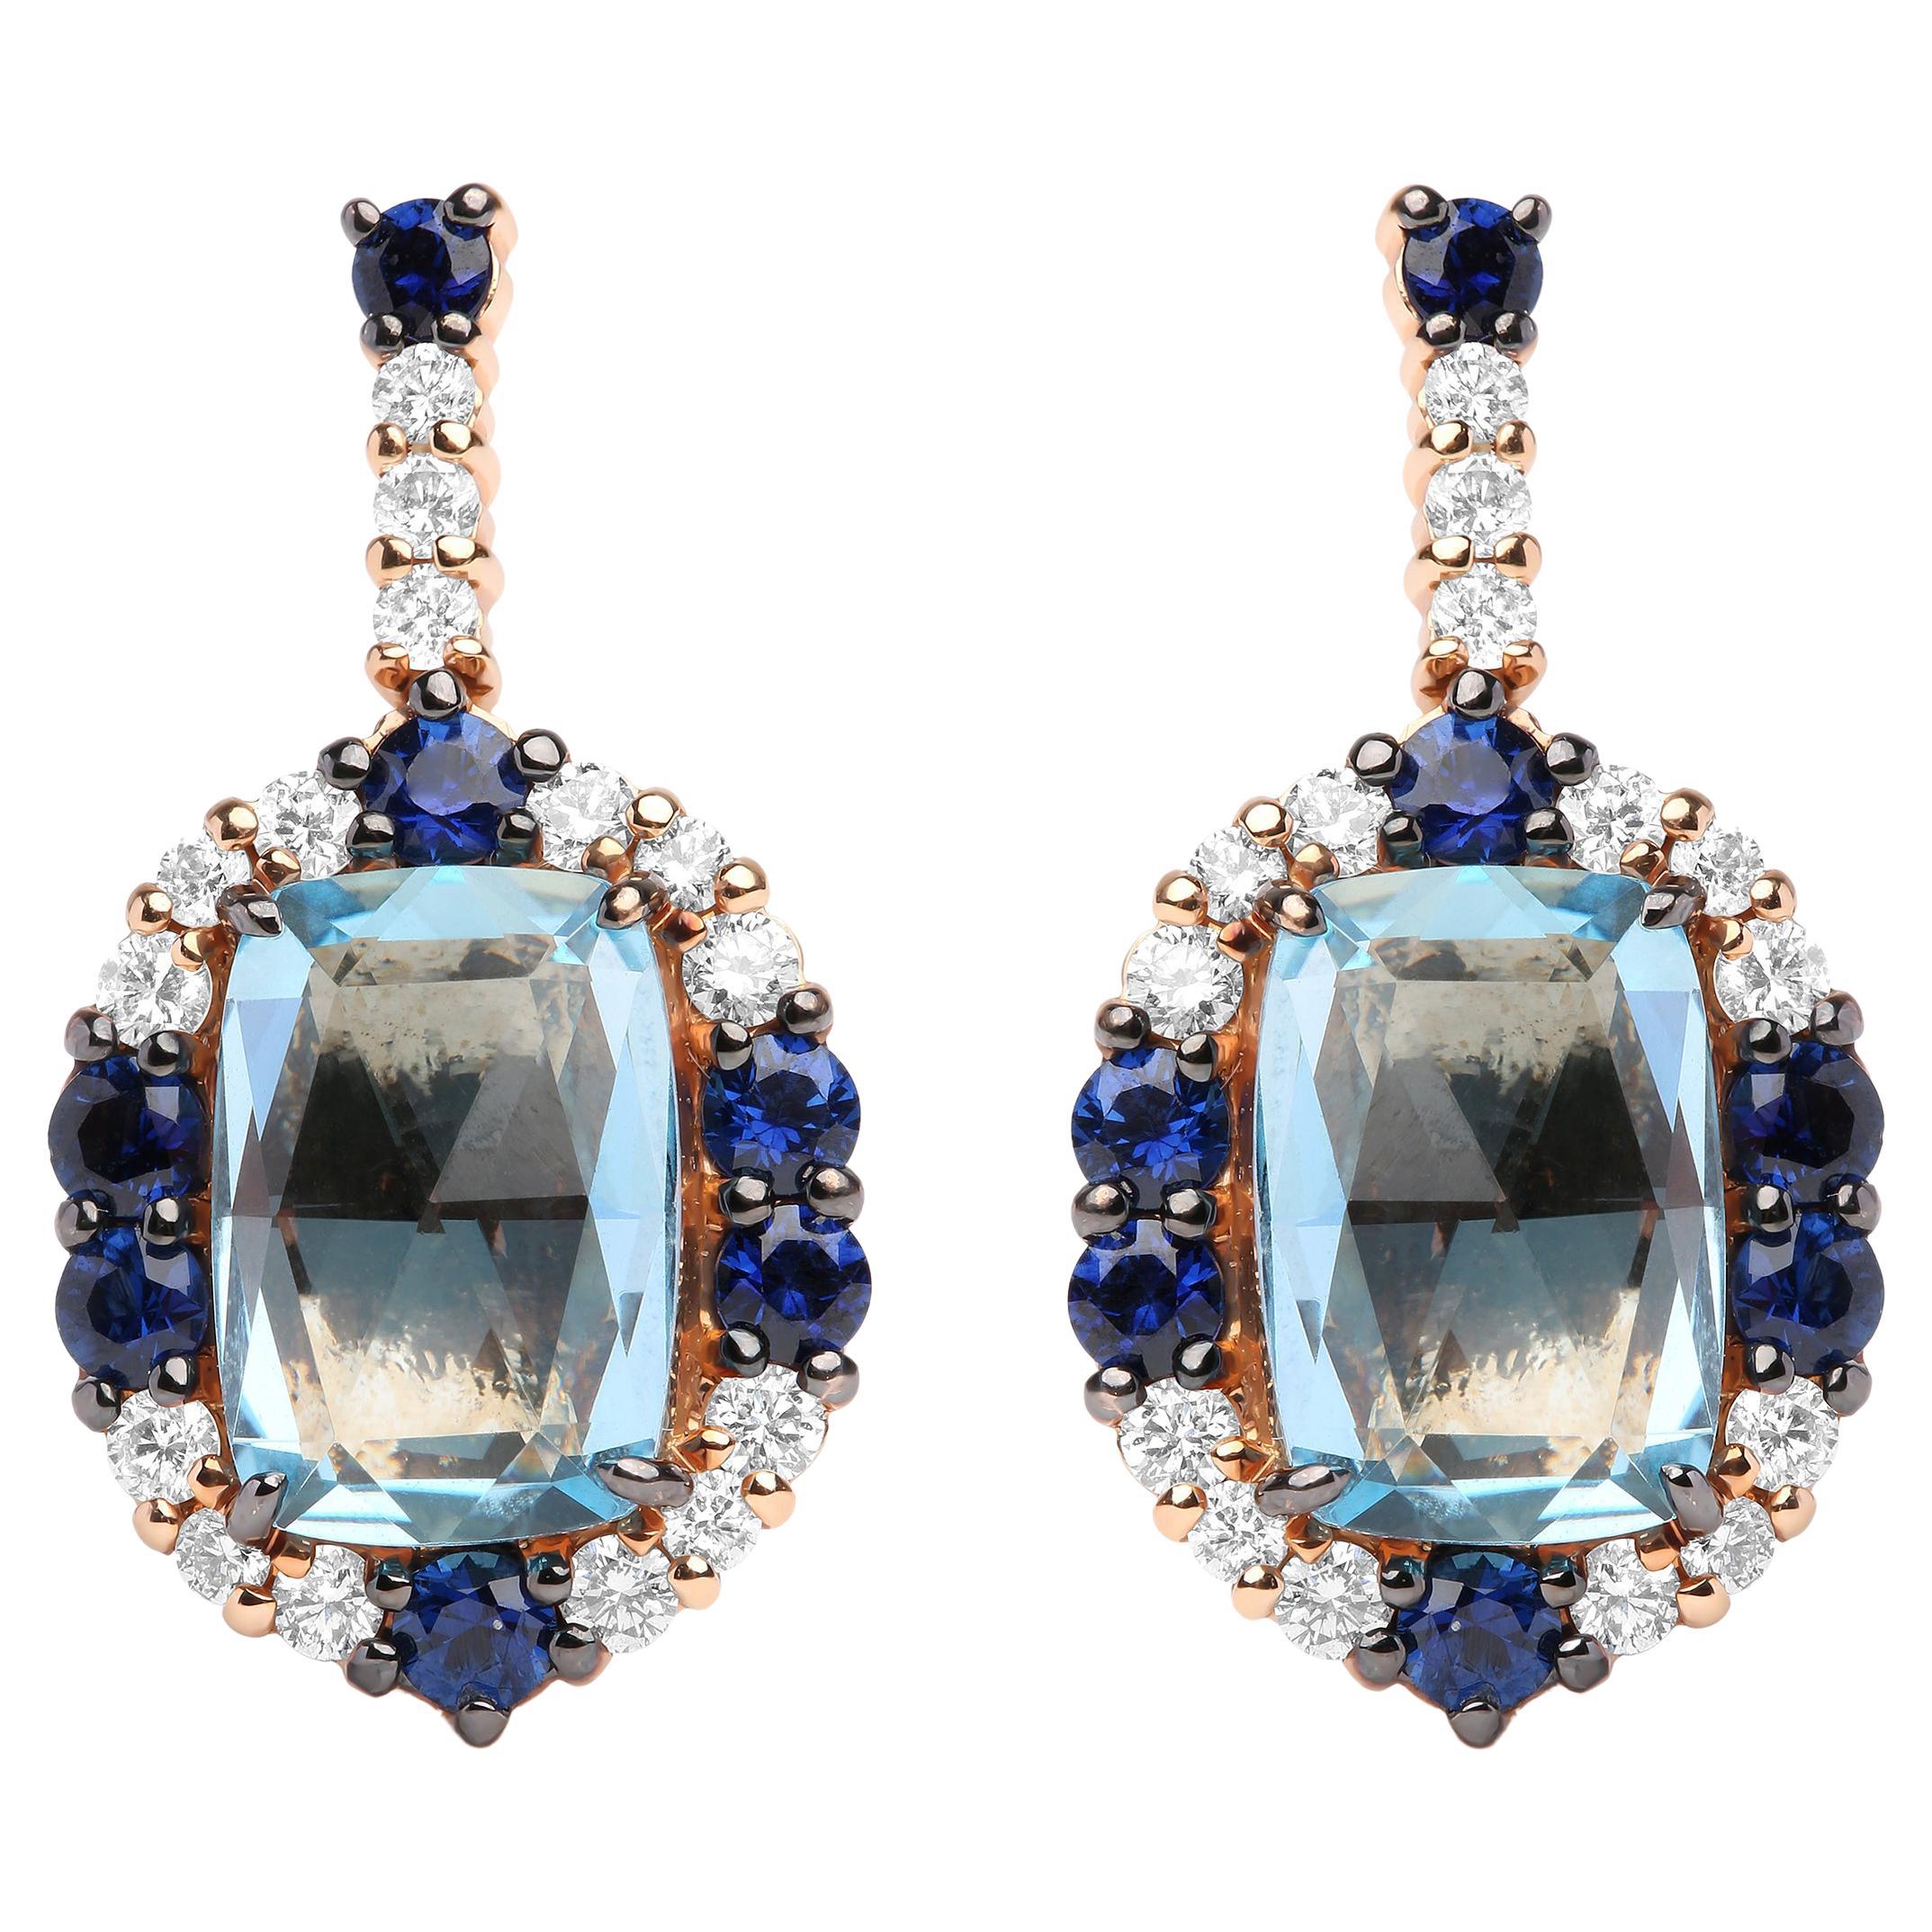 Pendants d'oreilles en or bicolore 18 carats avec diamants 3/4 carat, saphir bleu et topaze bleue